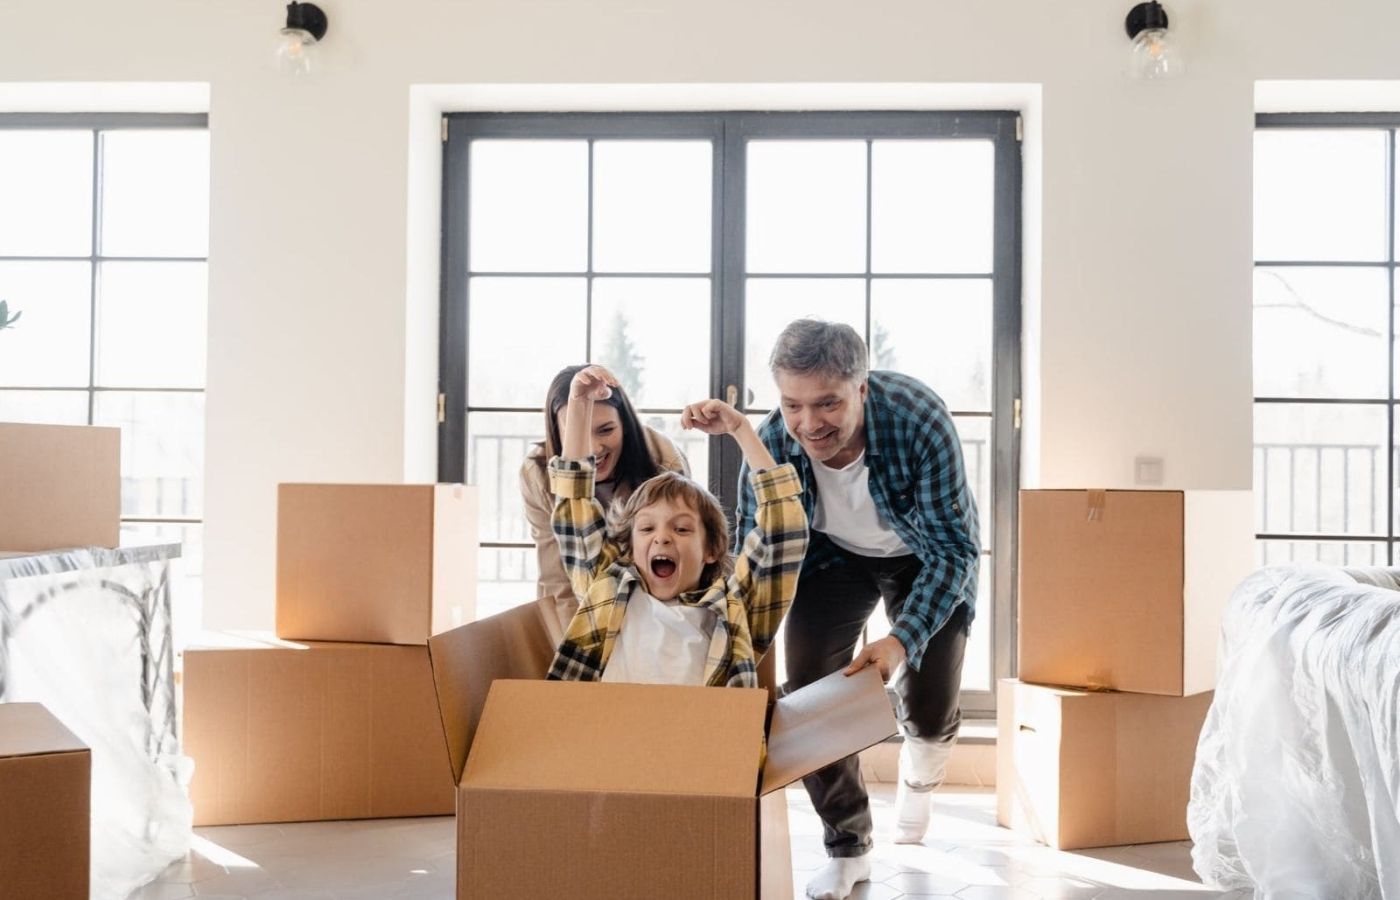 Comment bien préparer ses enfants à un déménagement